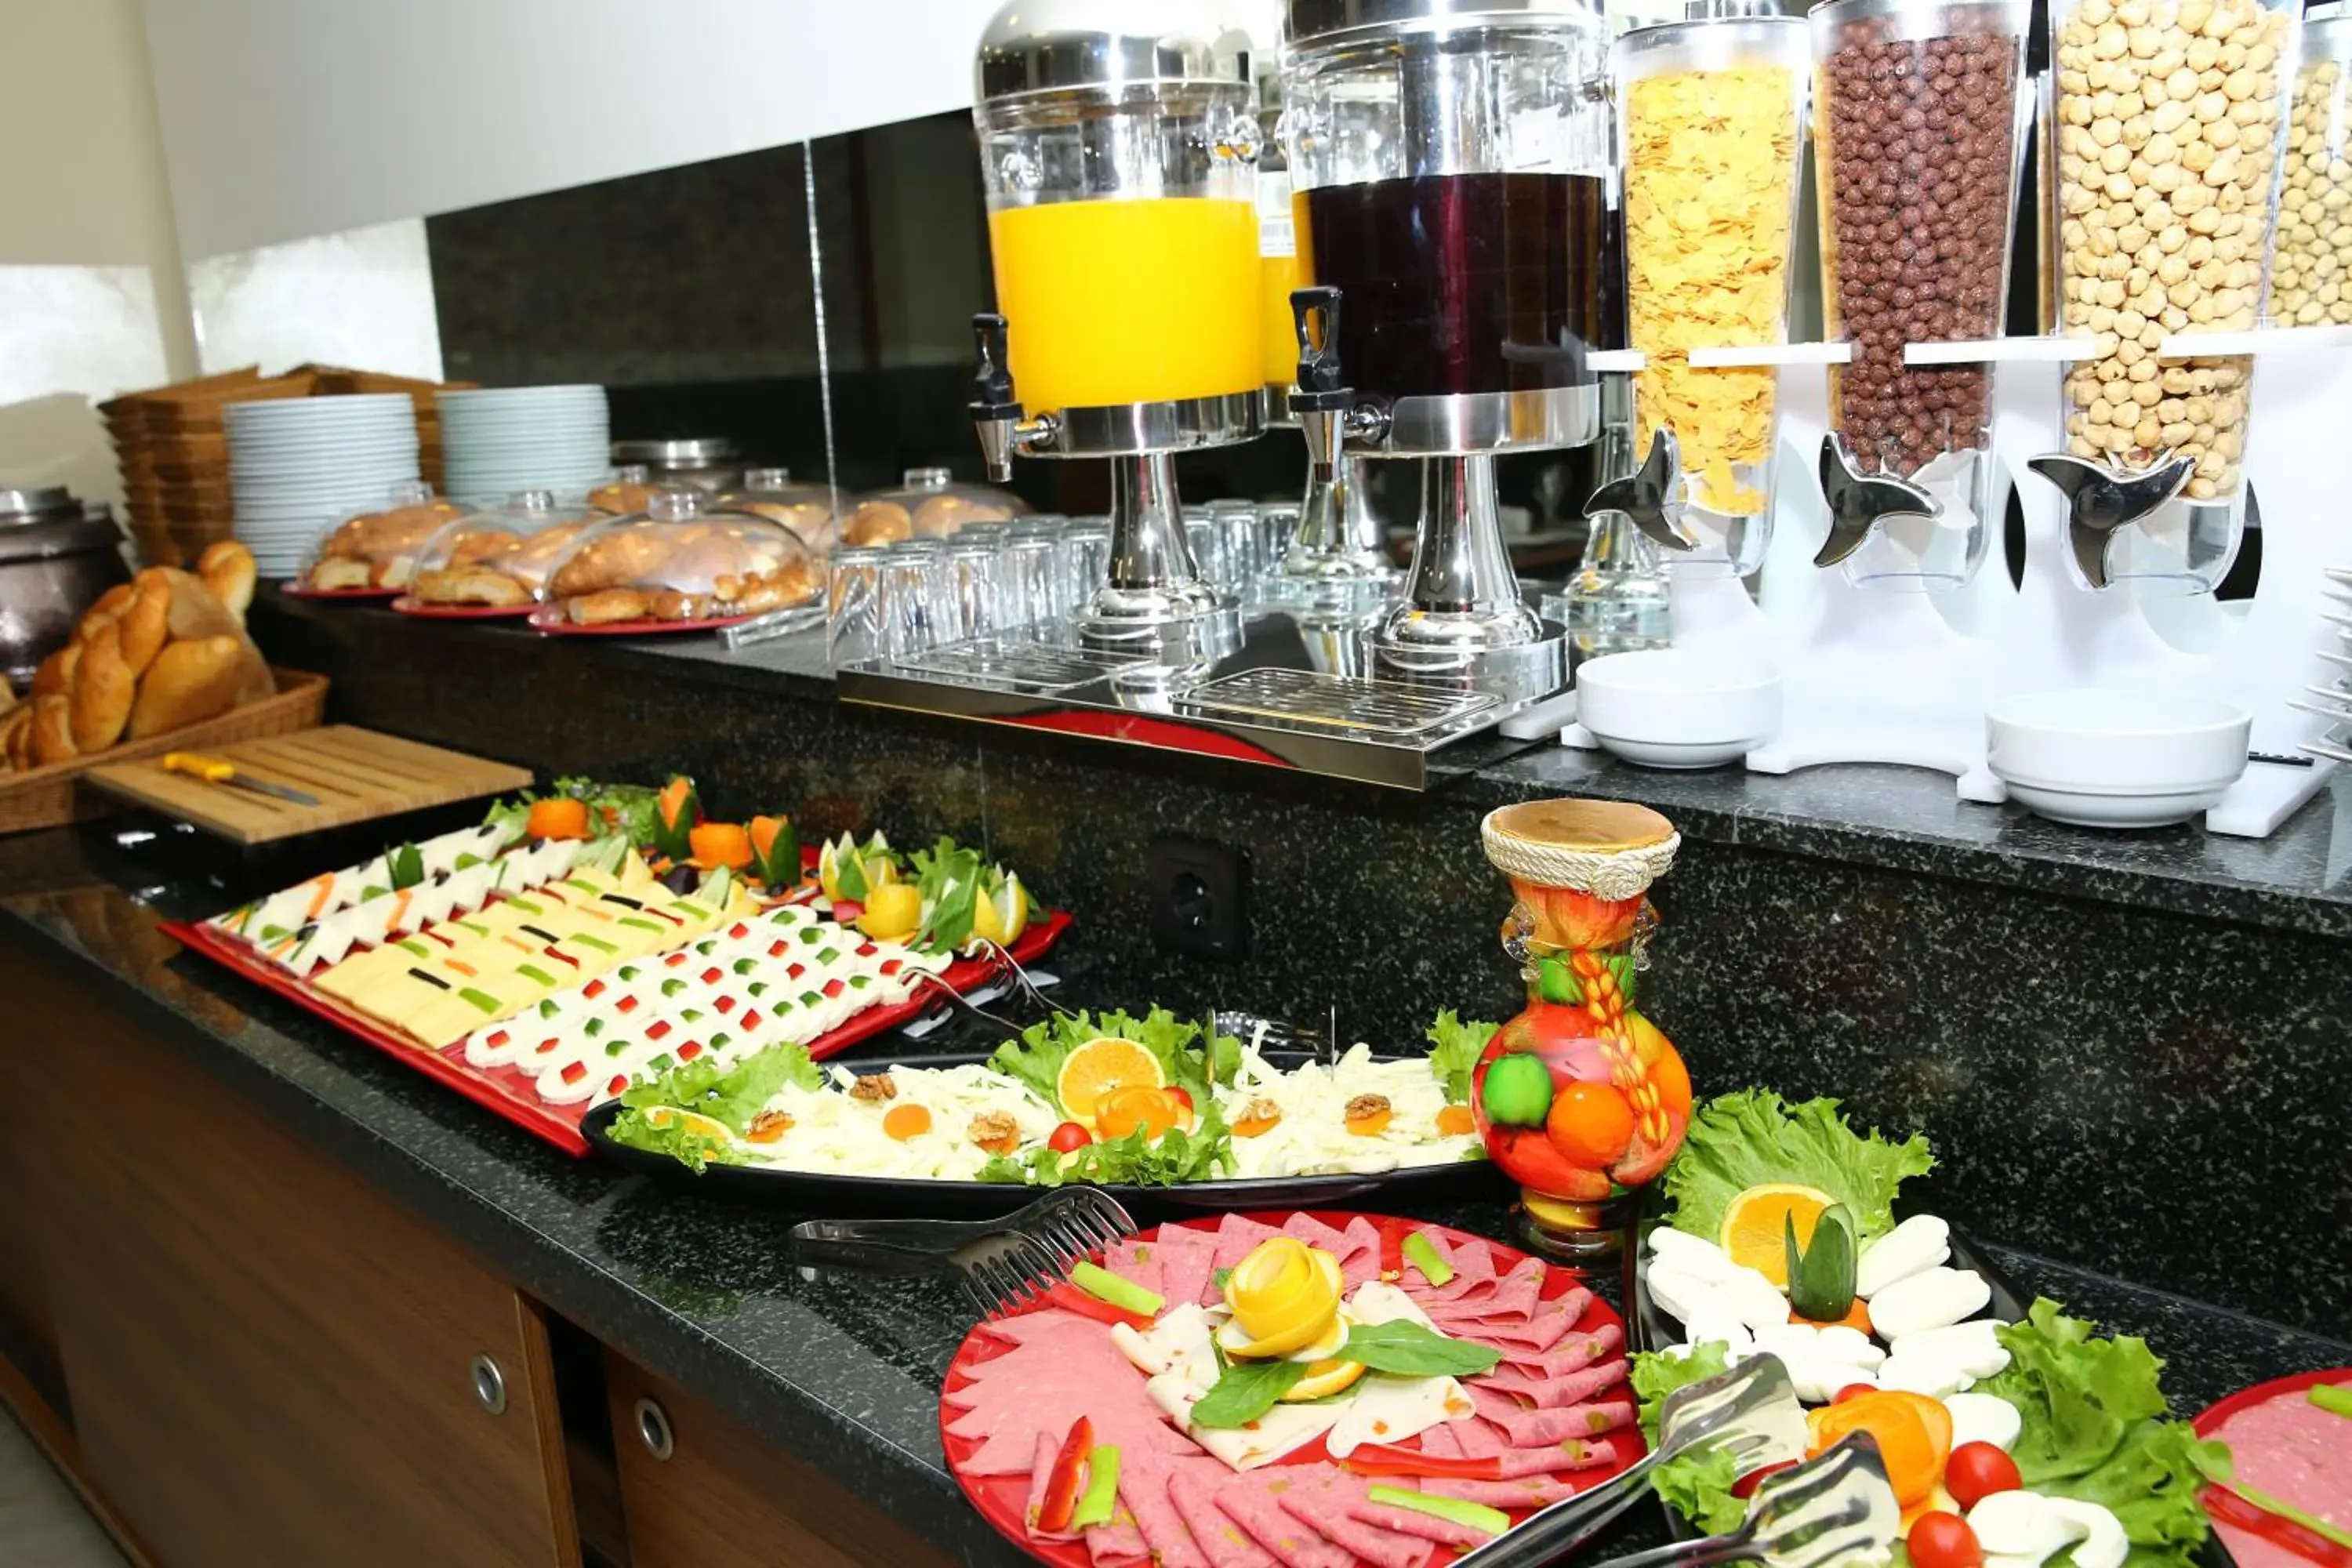 Buffet breakfast in Golden Lounge Hotel